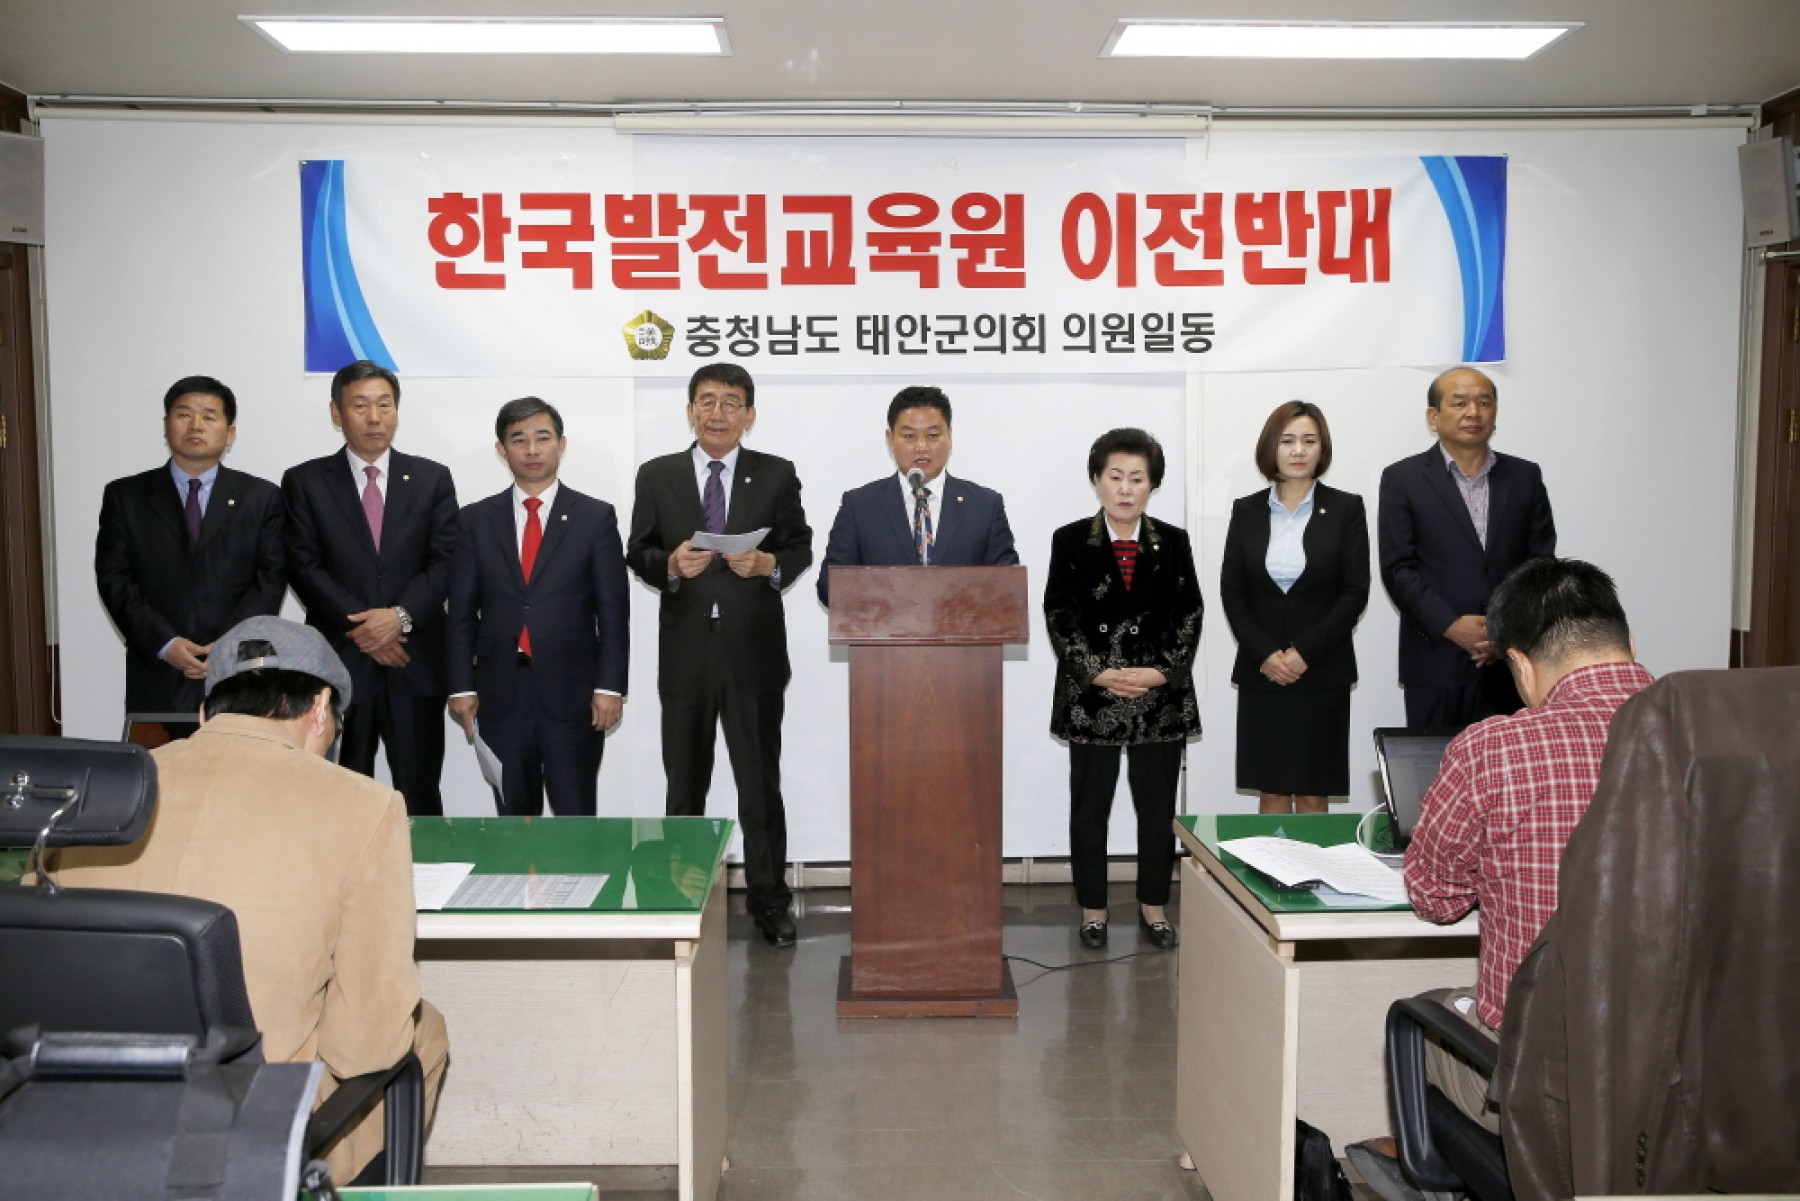 (사)한국발전교육원 이전에 대한 성명서 발표